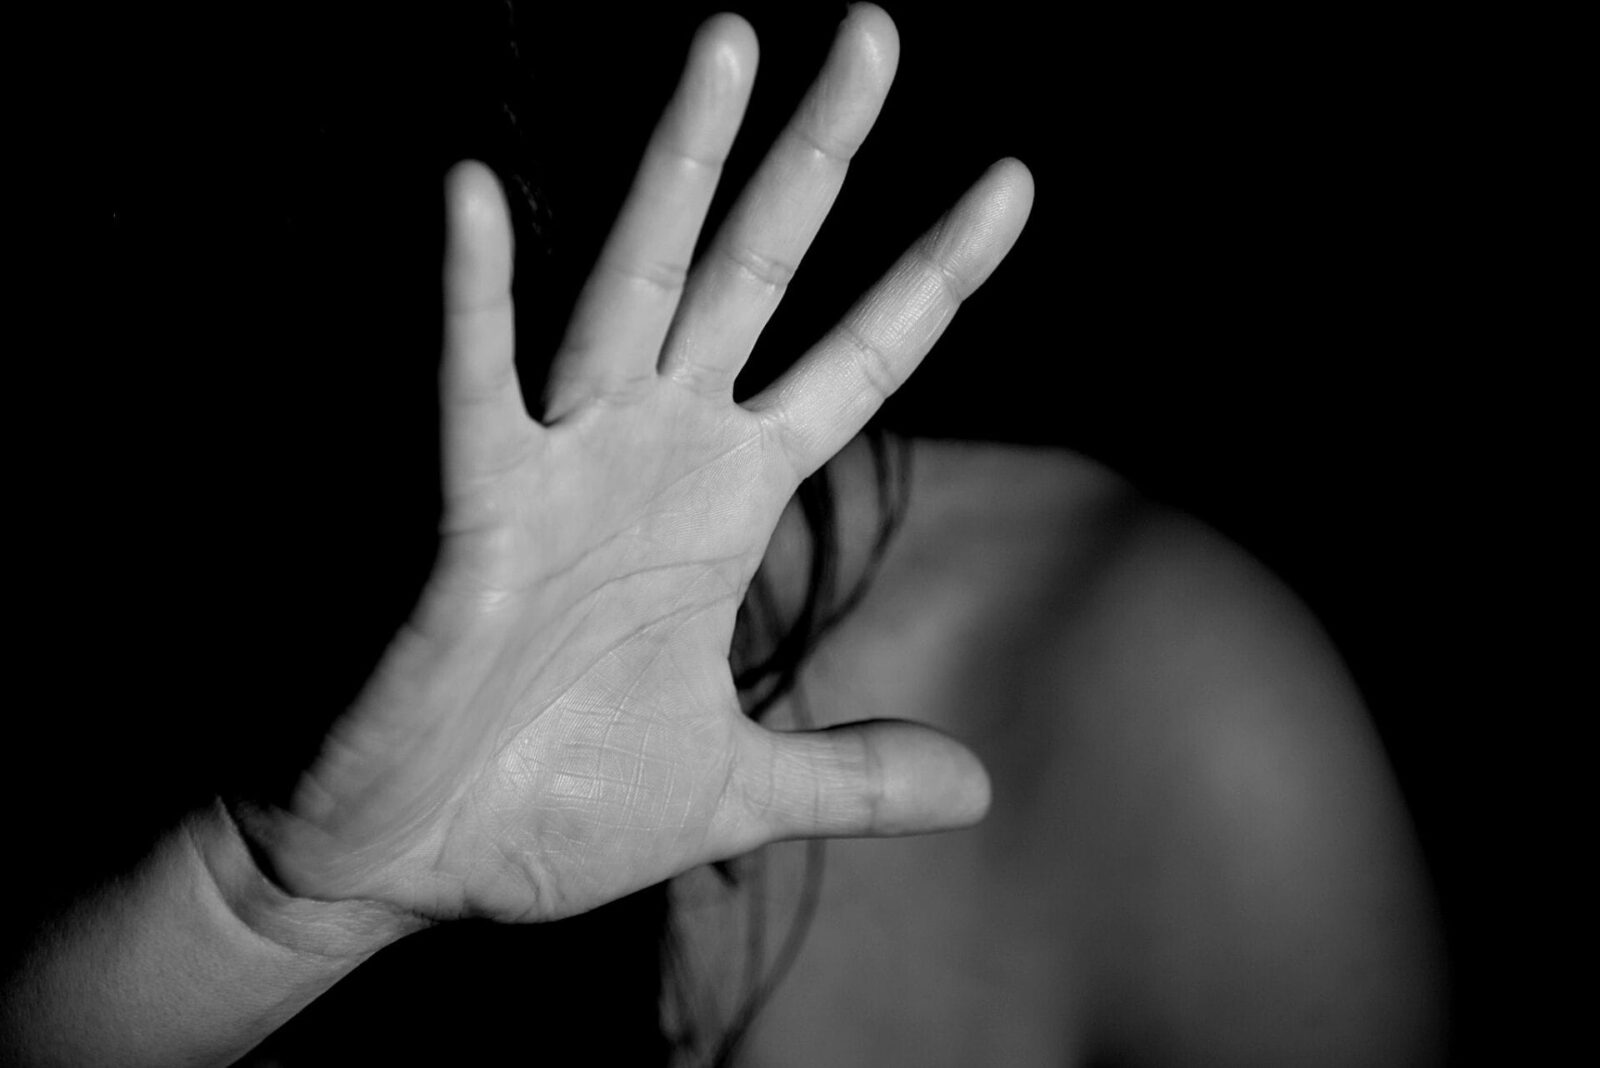 Stupra e deruba una donna a Catania: 4 anni di carcere